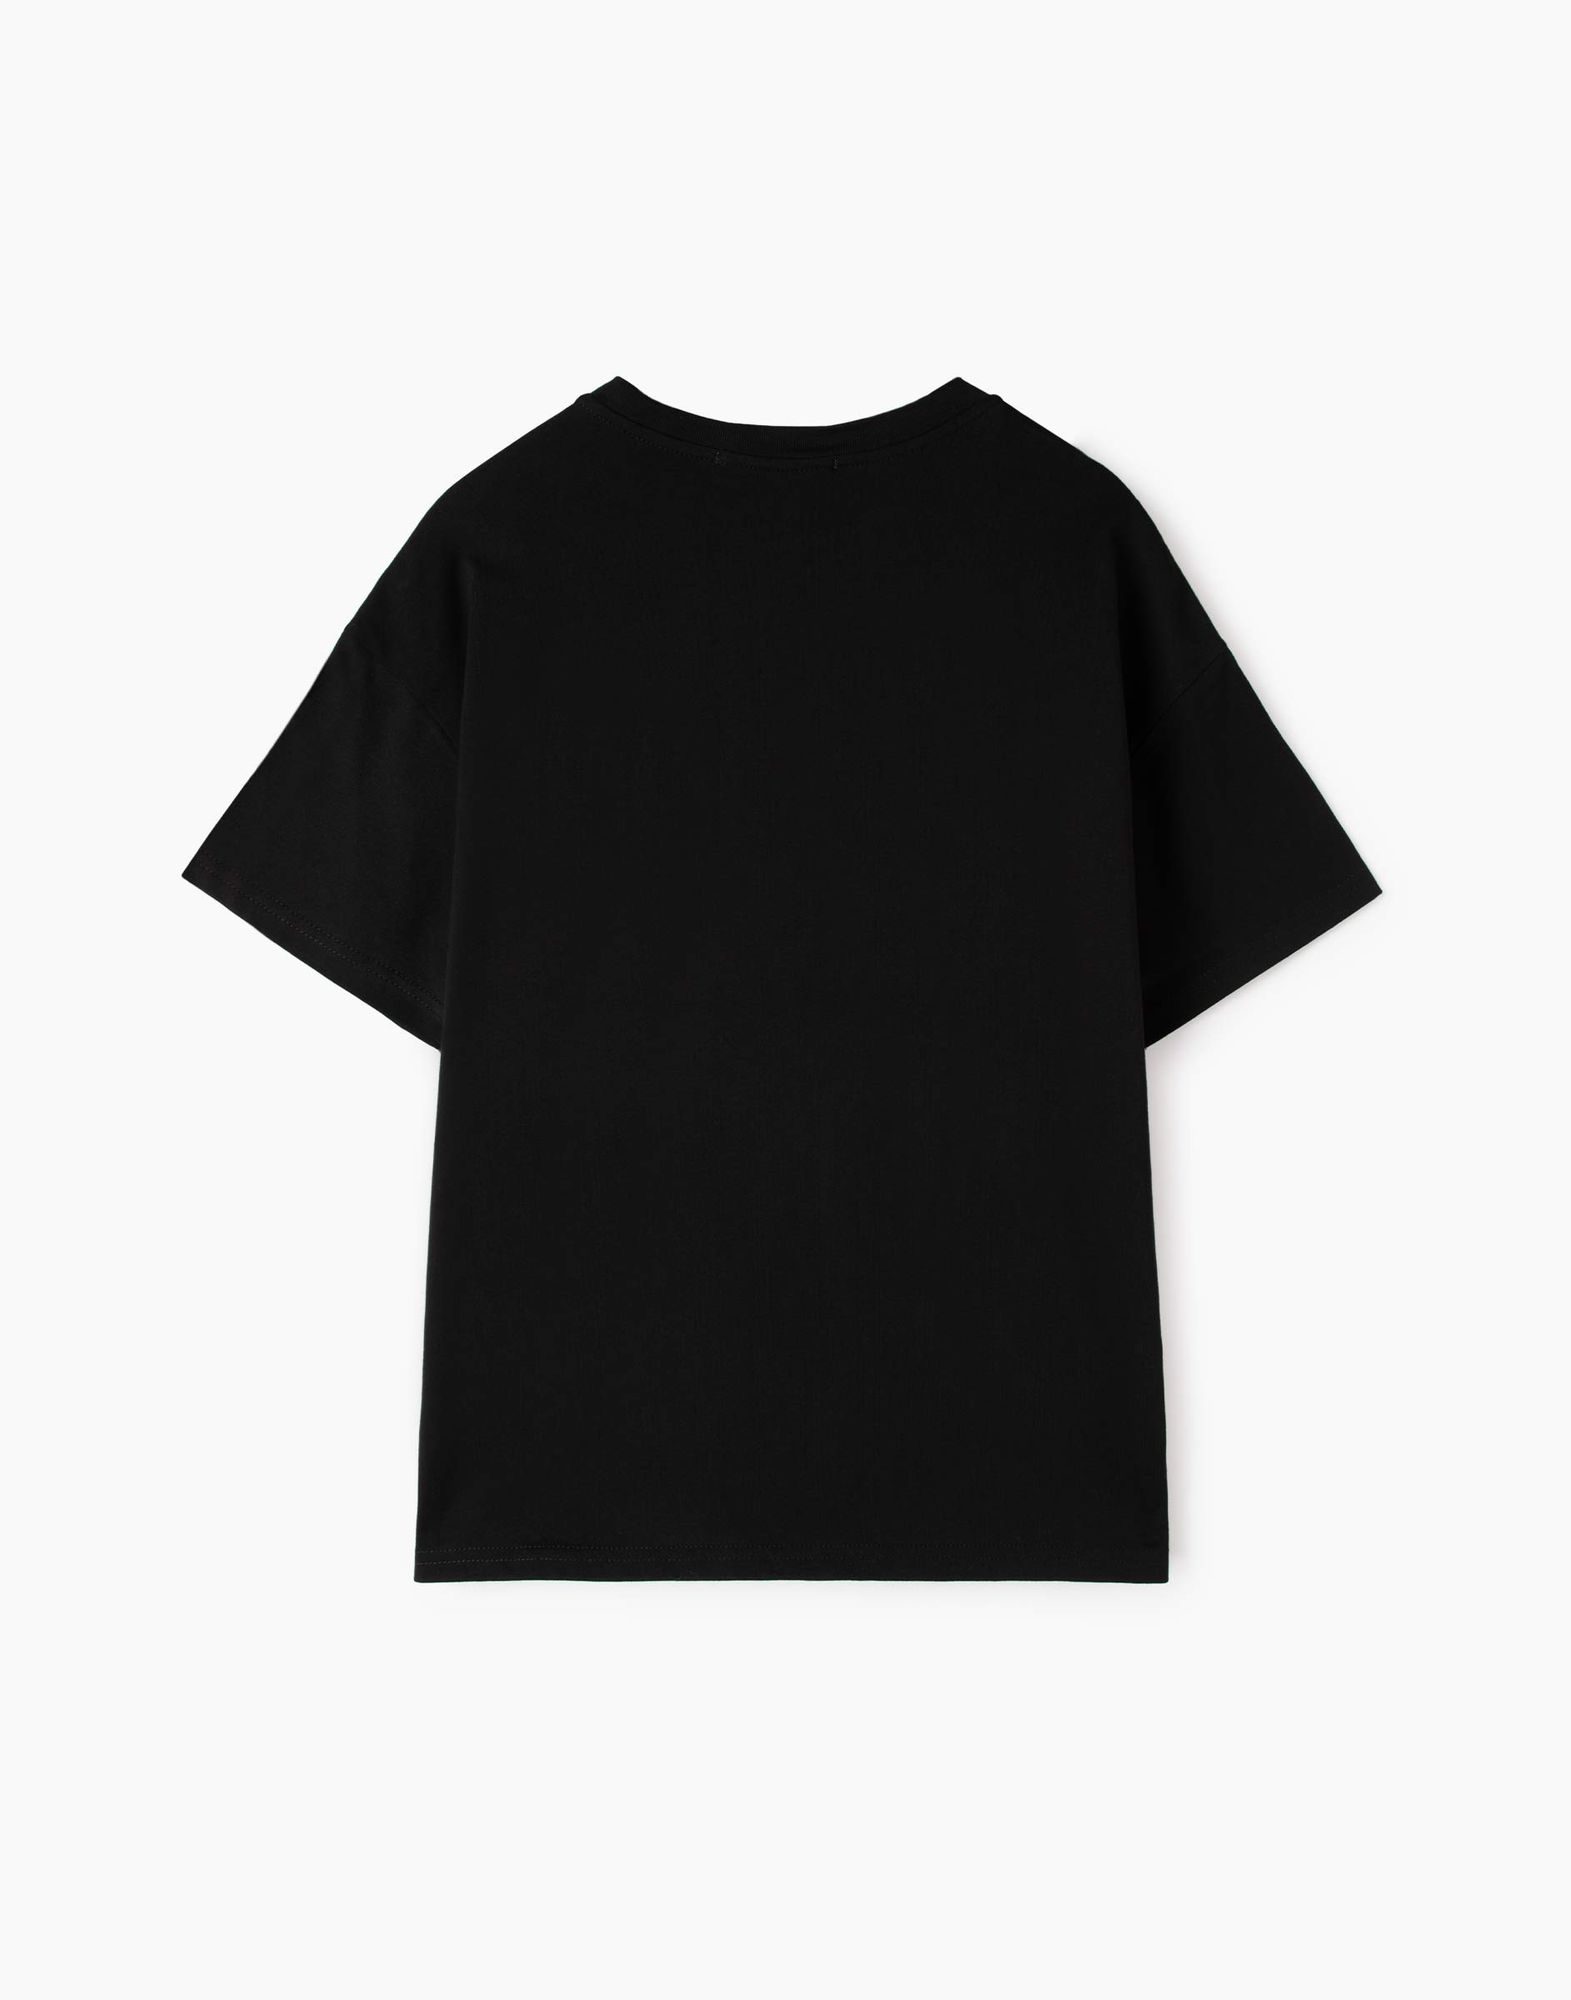 Чёрная футболка oversize с принтом для девочки-2